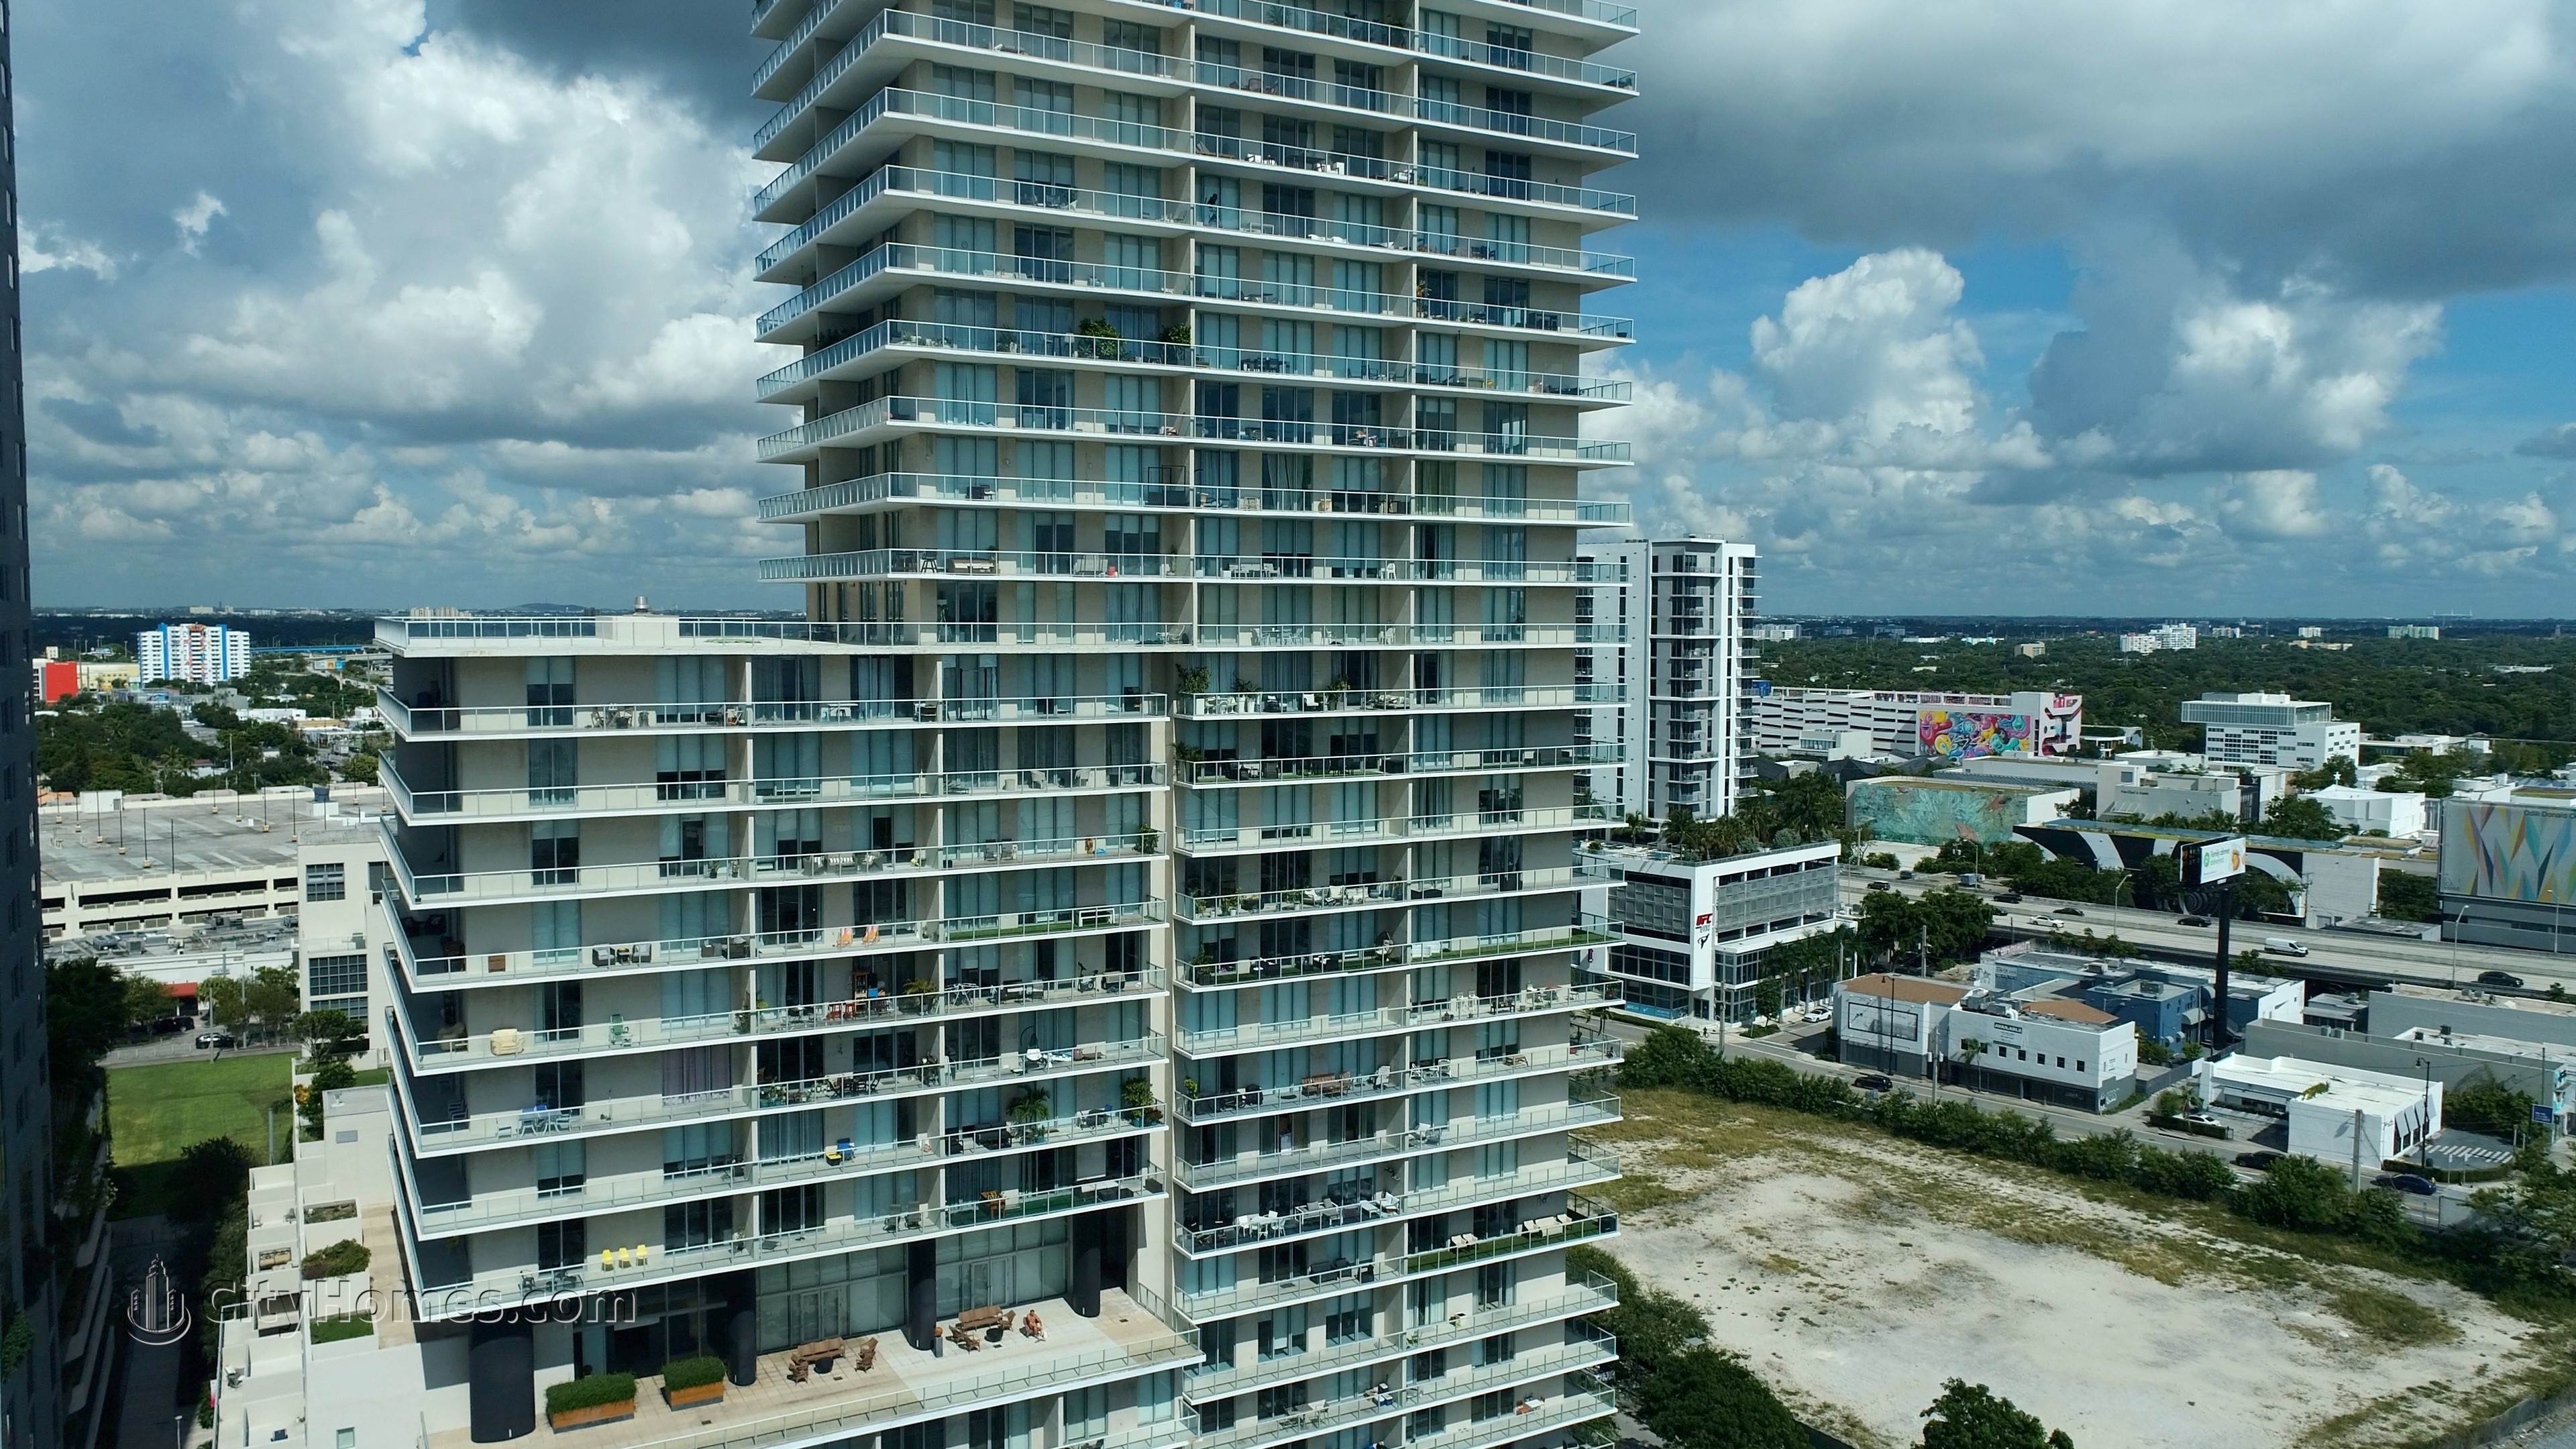 4. Two Midtown building at 3470 E Coast Avenue, Midtown Miami, Miami, FL 33137